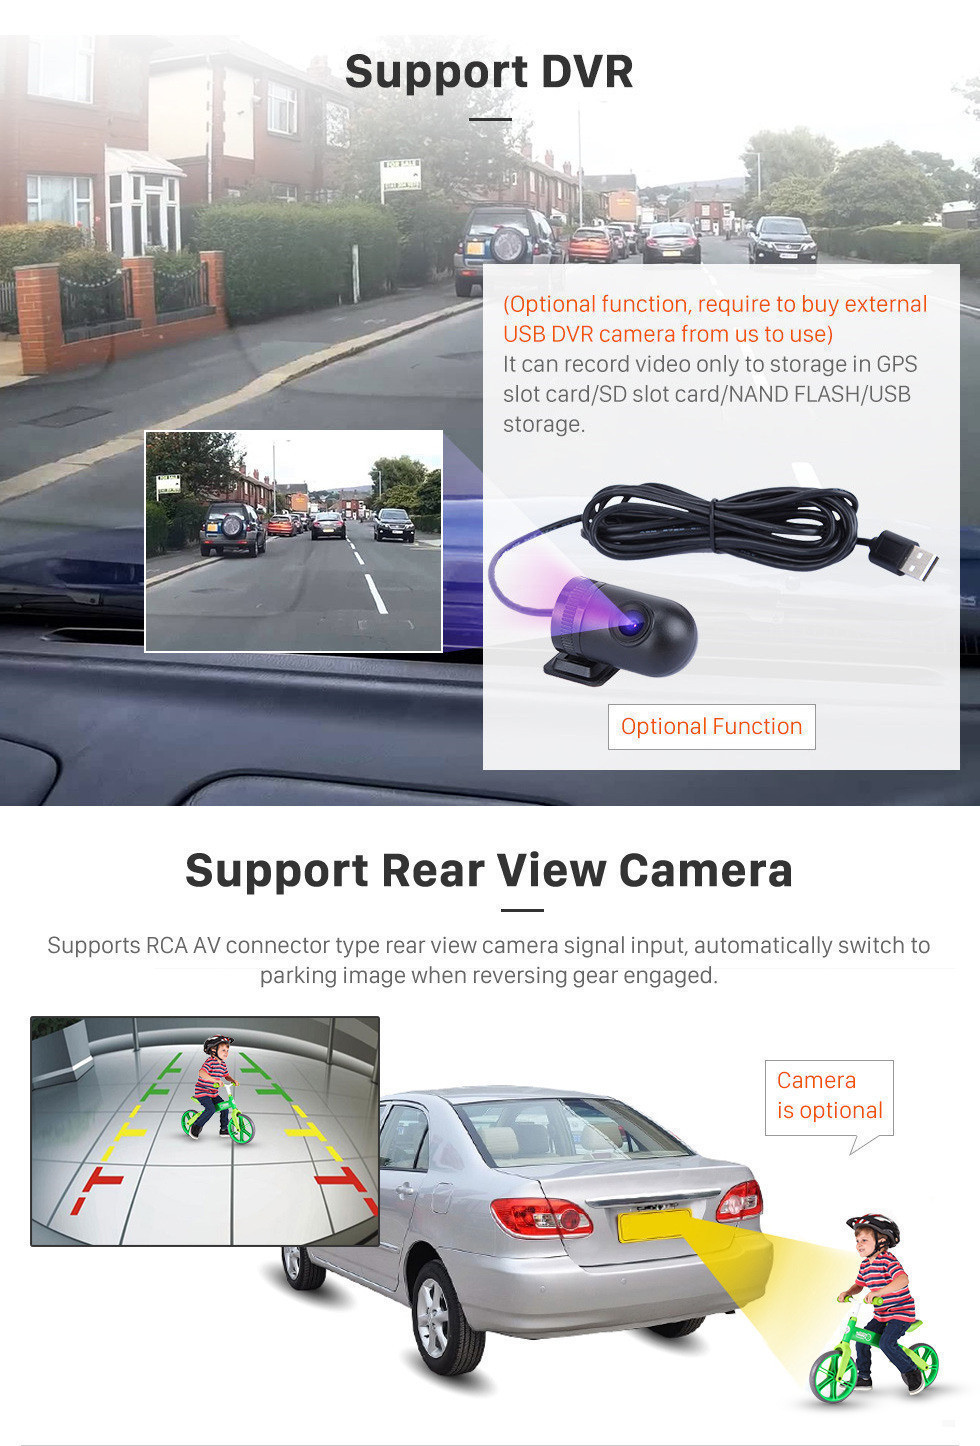 Seicane 10,1 дюймов 2012-2016 Nissan Slyphy Android 11.0 GPS навигационная система Авторадио MP3 4G Wi-Fi USB 1080P Видео Авто A / V Резервное копирование камеры Зеркало Ссылка